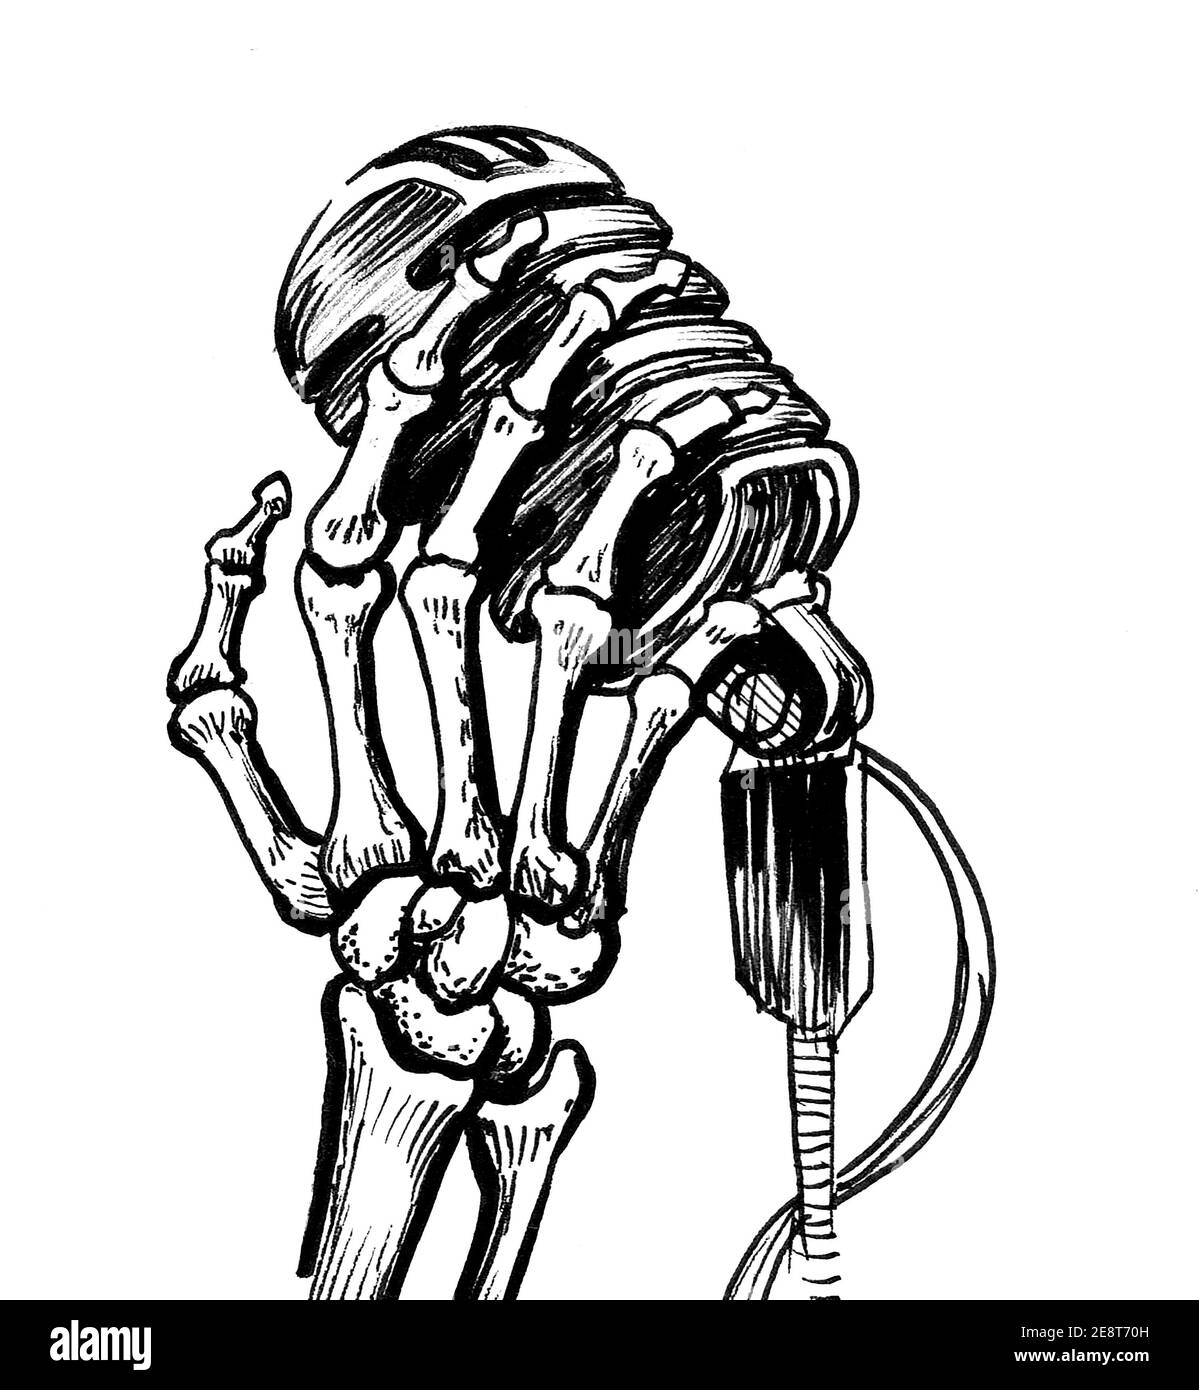 skeleton hand holding ball